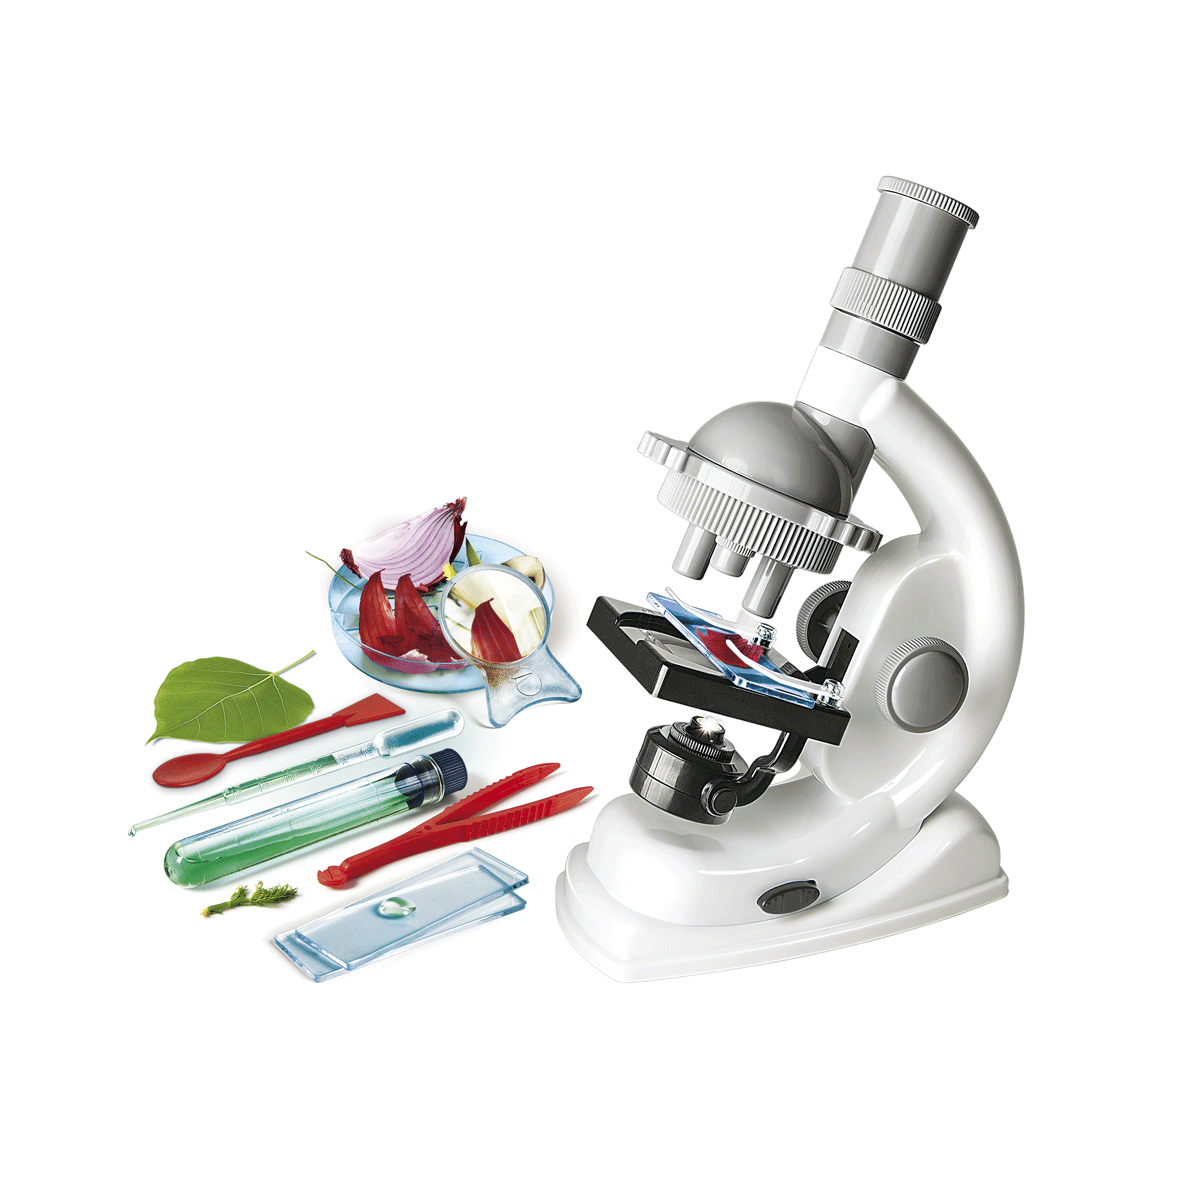 Clementoni - scienza e gioco lab - scienze al microscopio - Scienza e Gioco